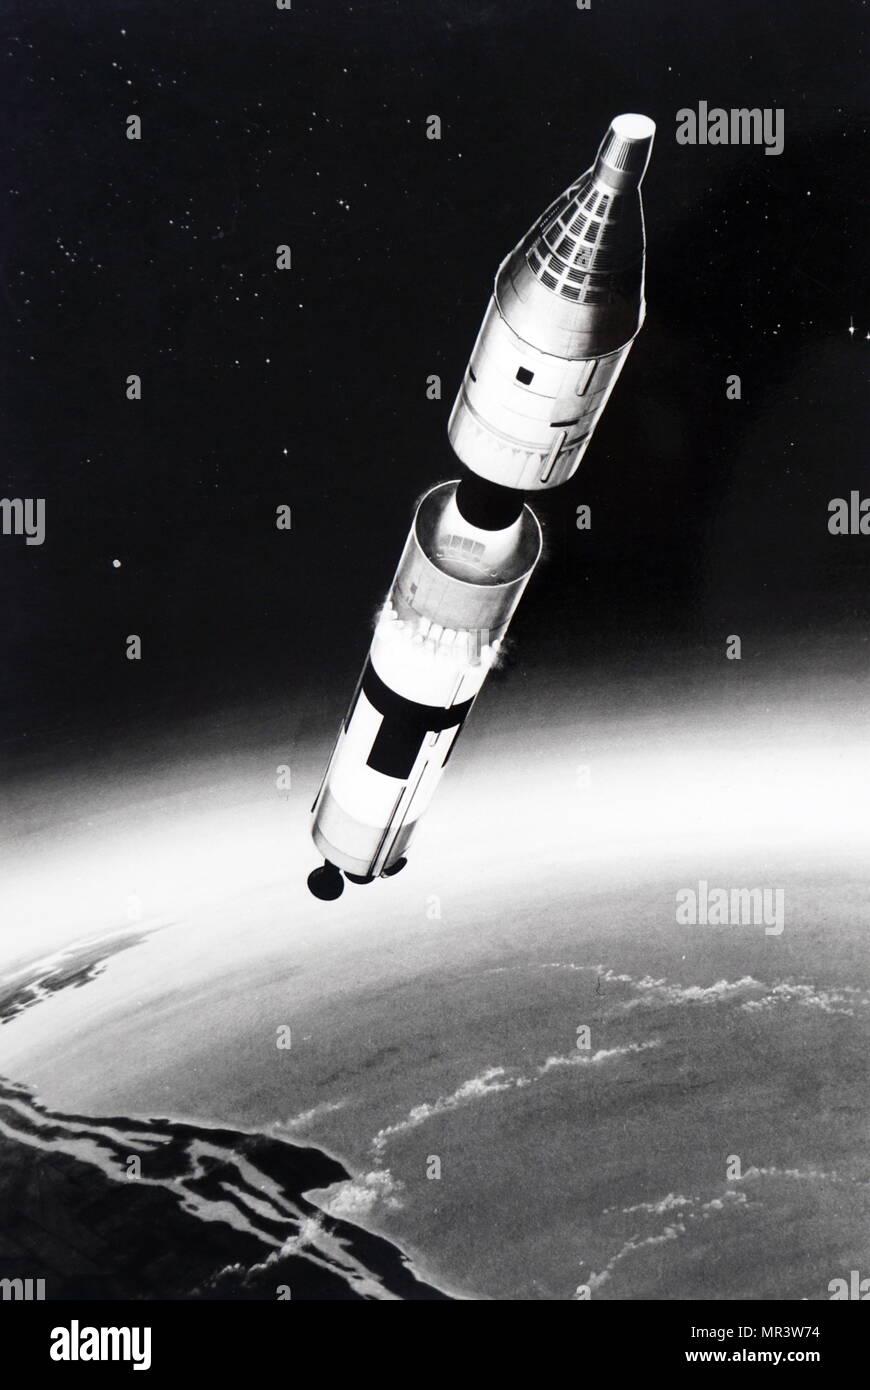 Titan ii missile immagini e fotografie stock ad alta risoluzione - Alamy